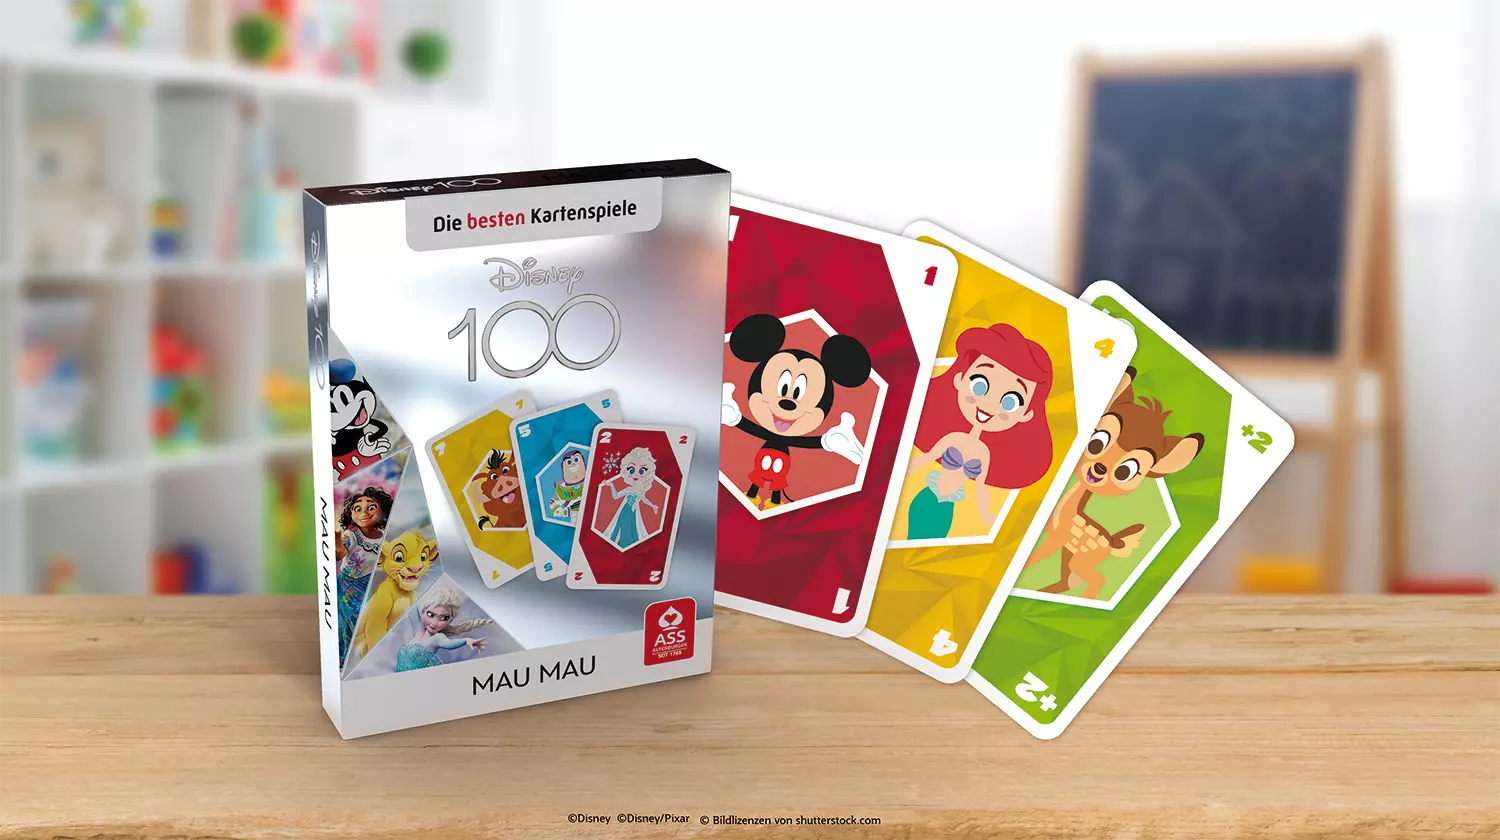 Es ist das ASS Altenburger Disney 100 Mau Mau Kartenspiel mit Schachtel und Karten vor einem bunten Hintergrund zu sehen.